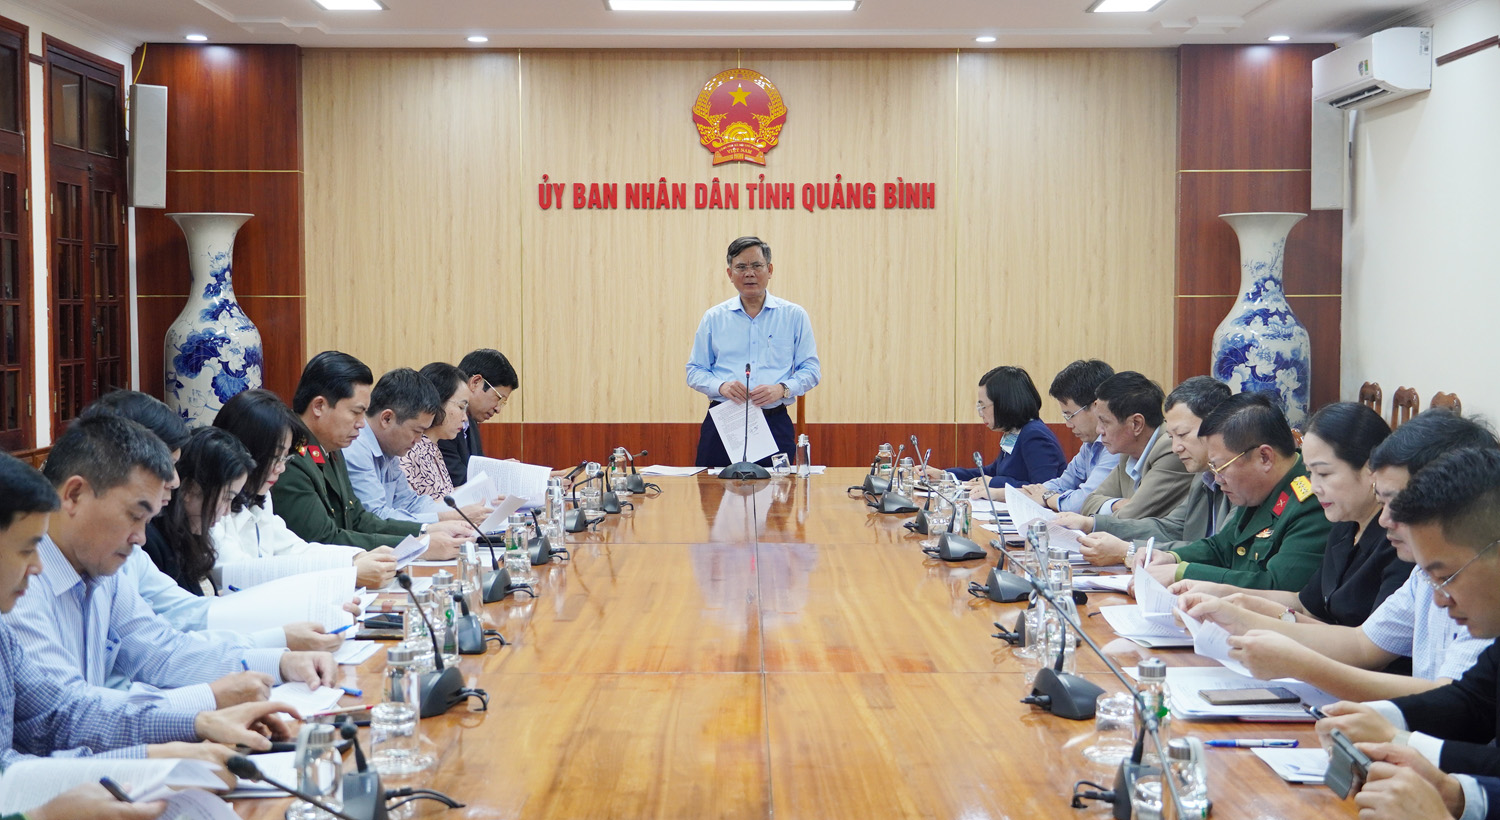 Chuẩn bị chu đáo các hoạt động kỷ niệm 420 năm hình thành tỉnh Quảng Bình